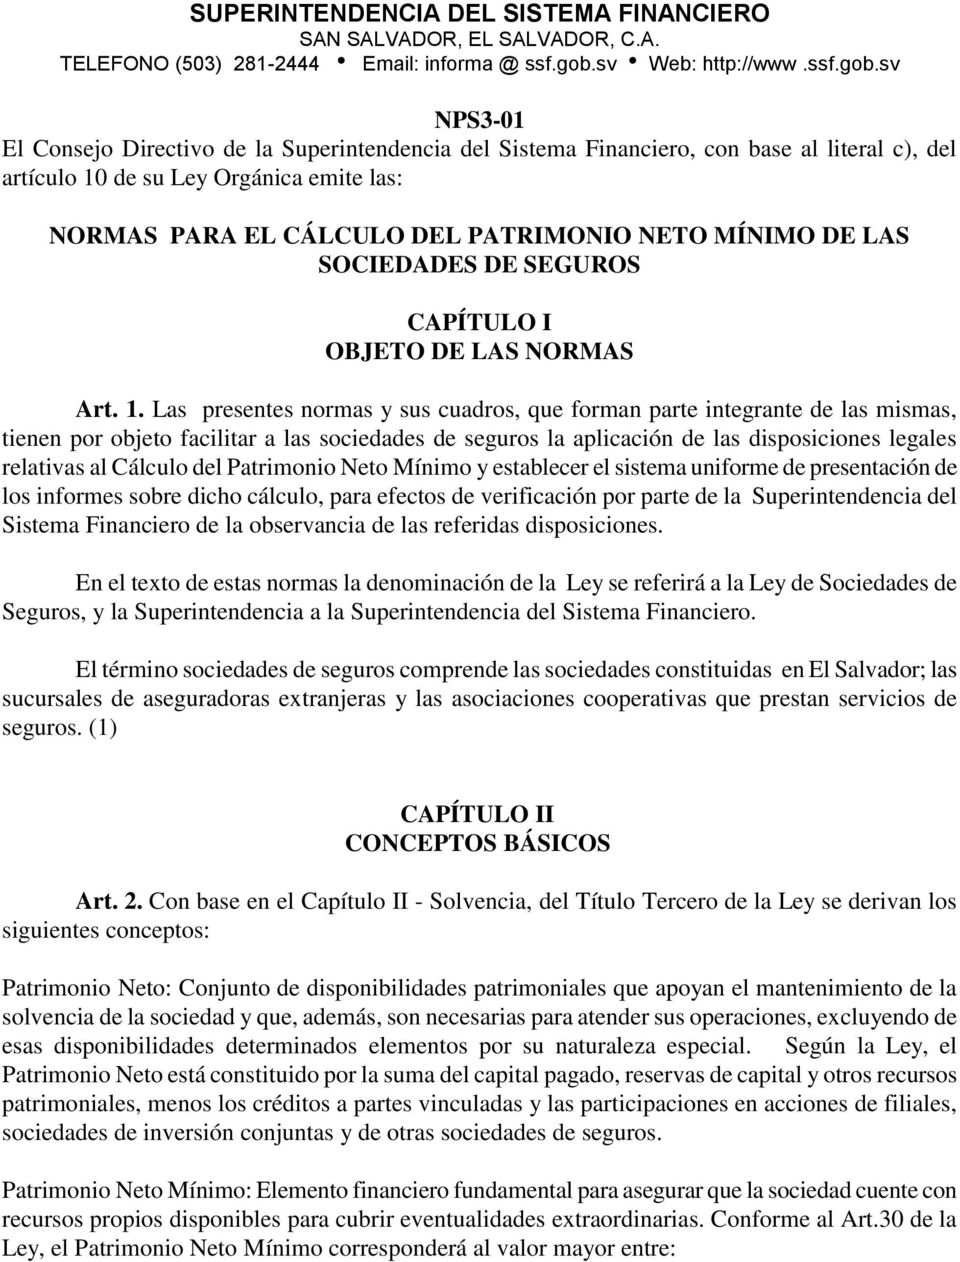 sv NPS3-01 El Consejo Directivo de la Superintendencia del Sistema Financiero, con base al literal c), del artículo 10 de su Ley Orgánica emite las: NORMAS PARA EL CÁLCULO DEL PATRIMONIO NETO MÍNIMO